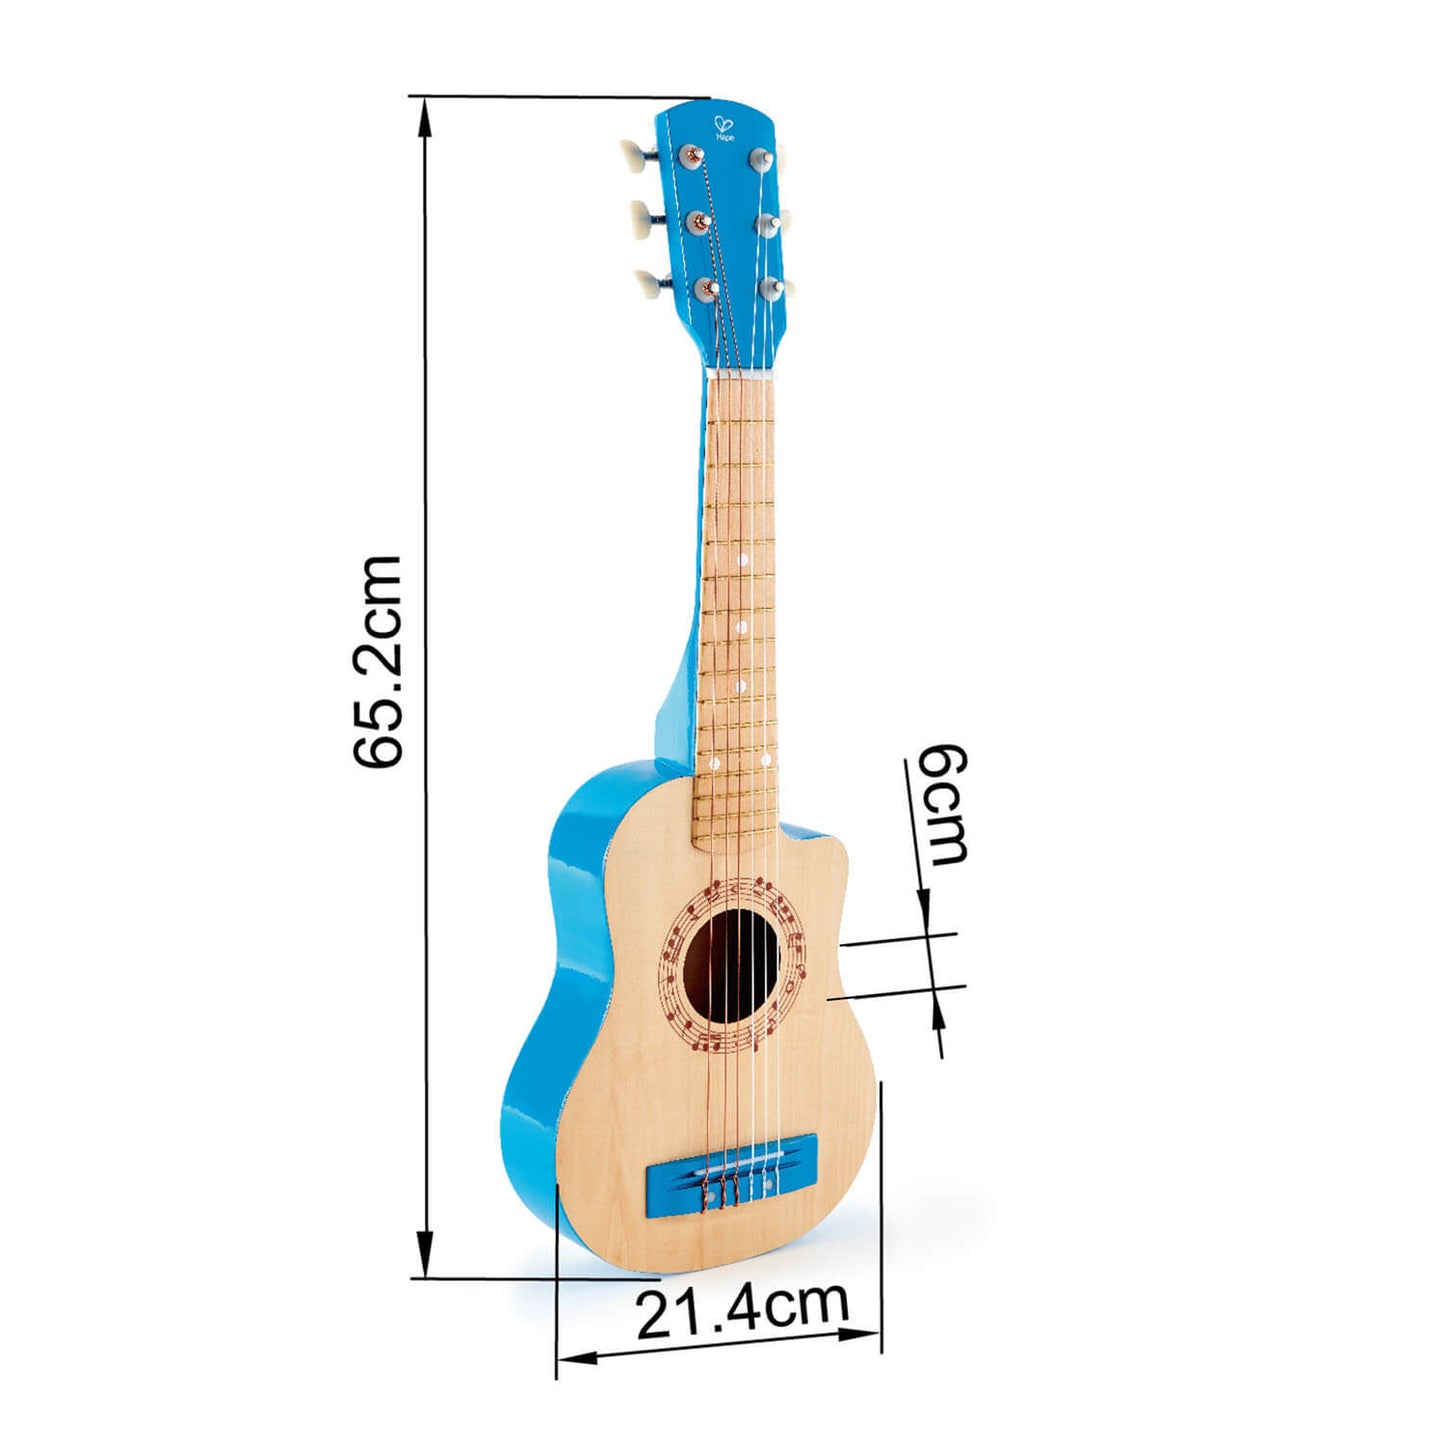 Blue ukulele